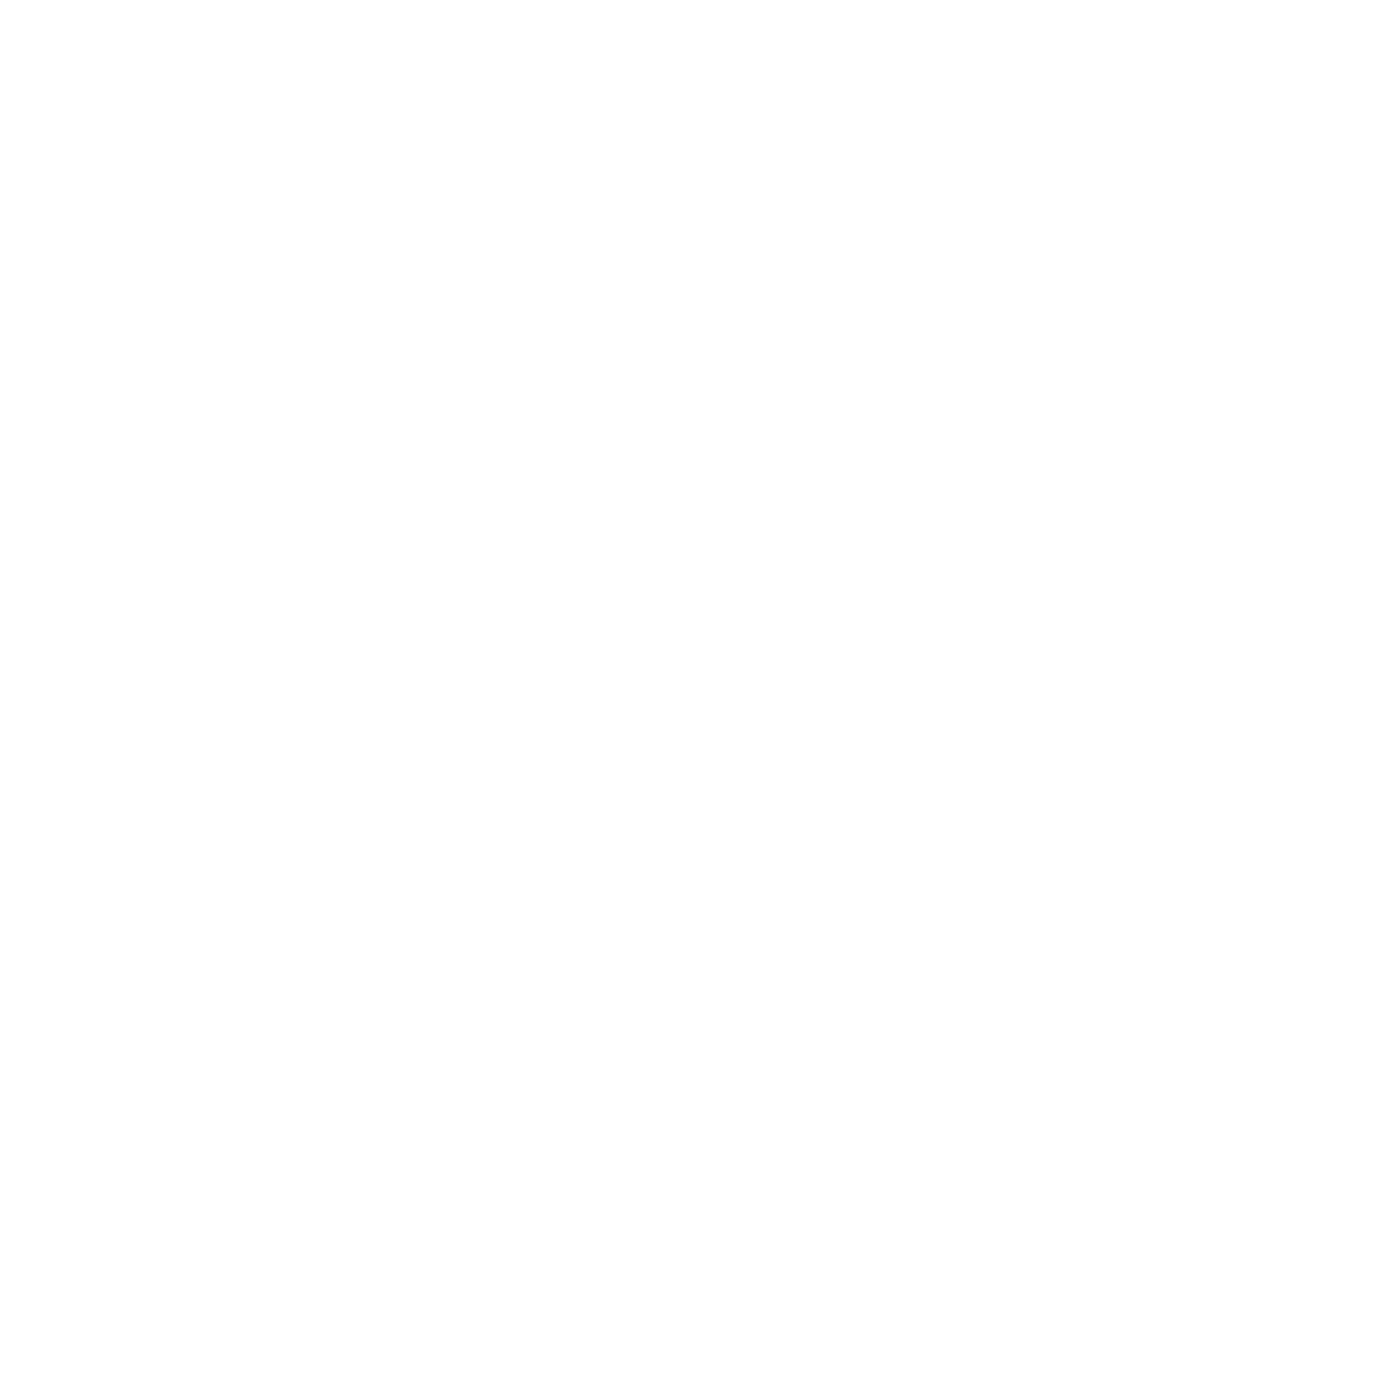 Housing Program